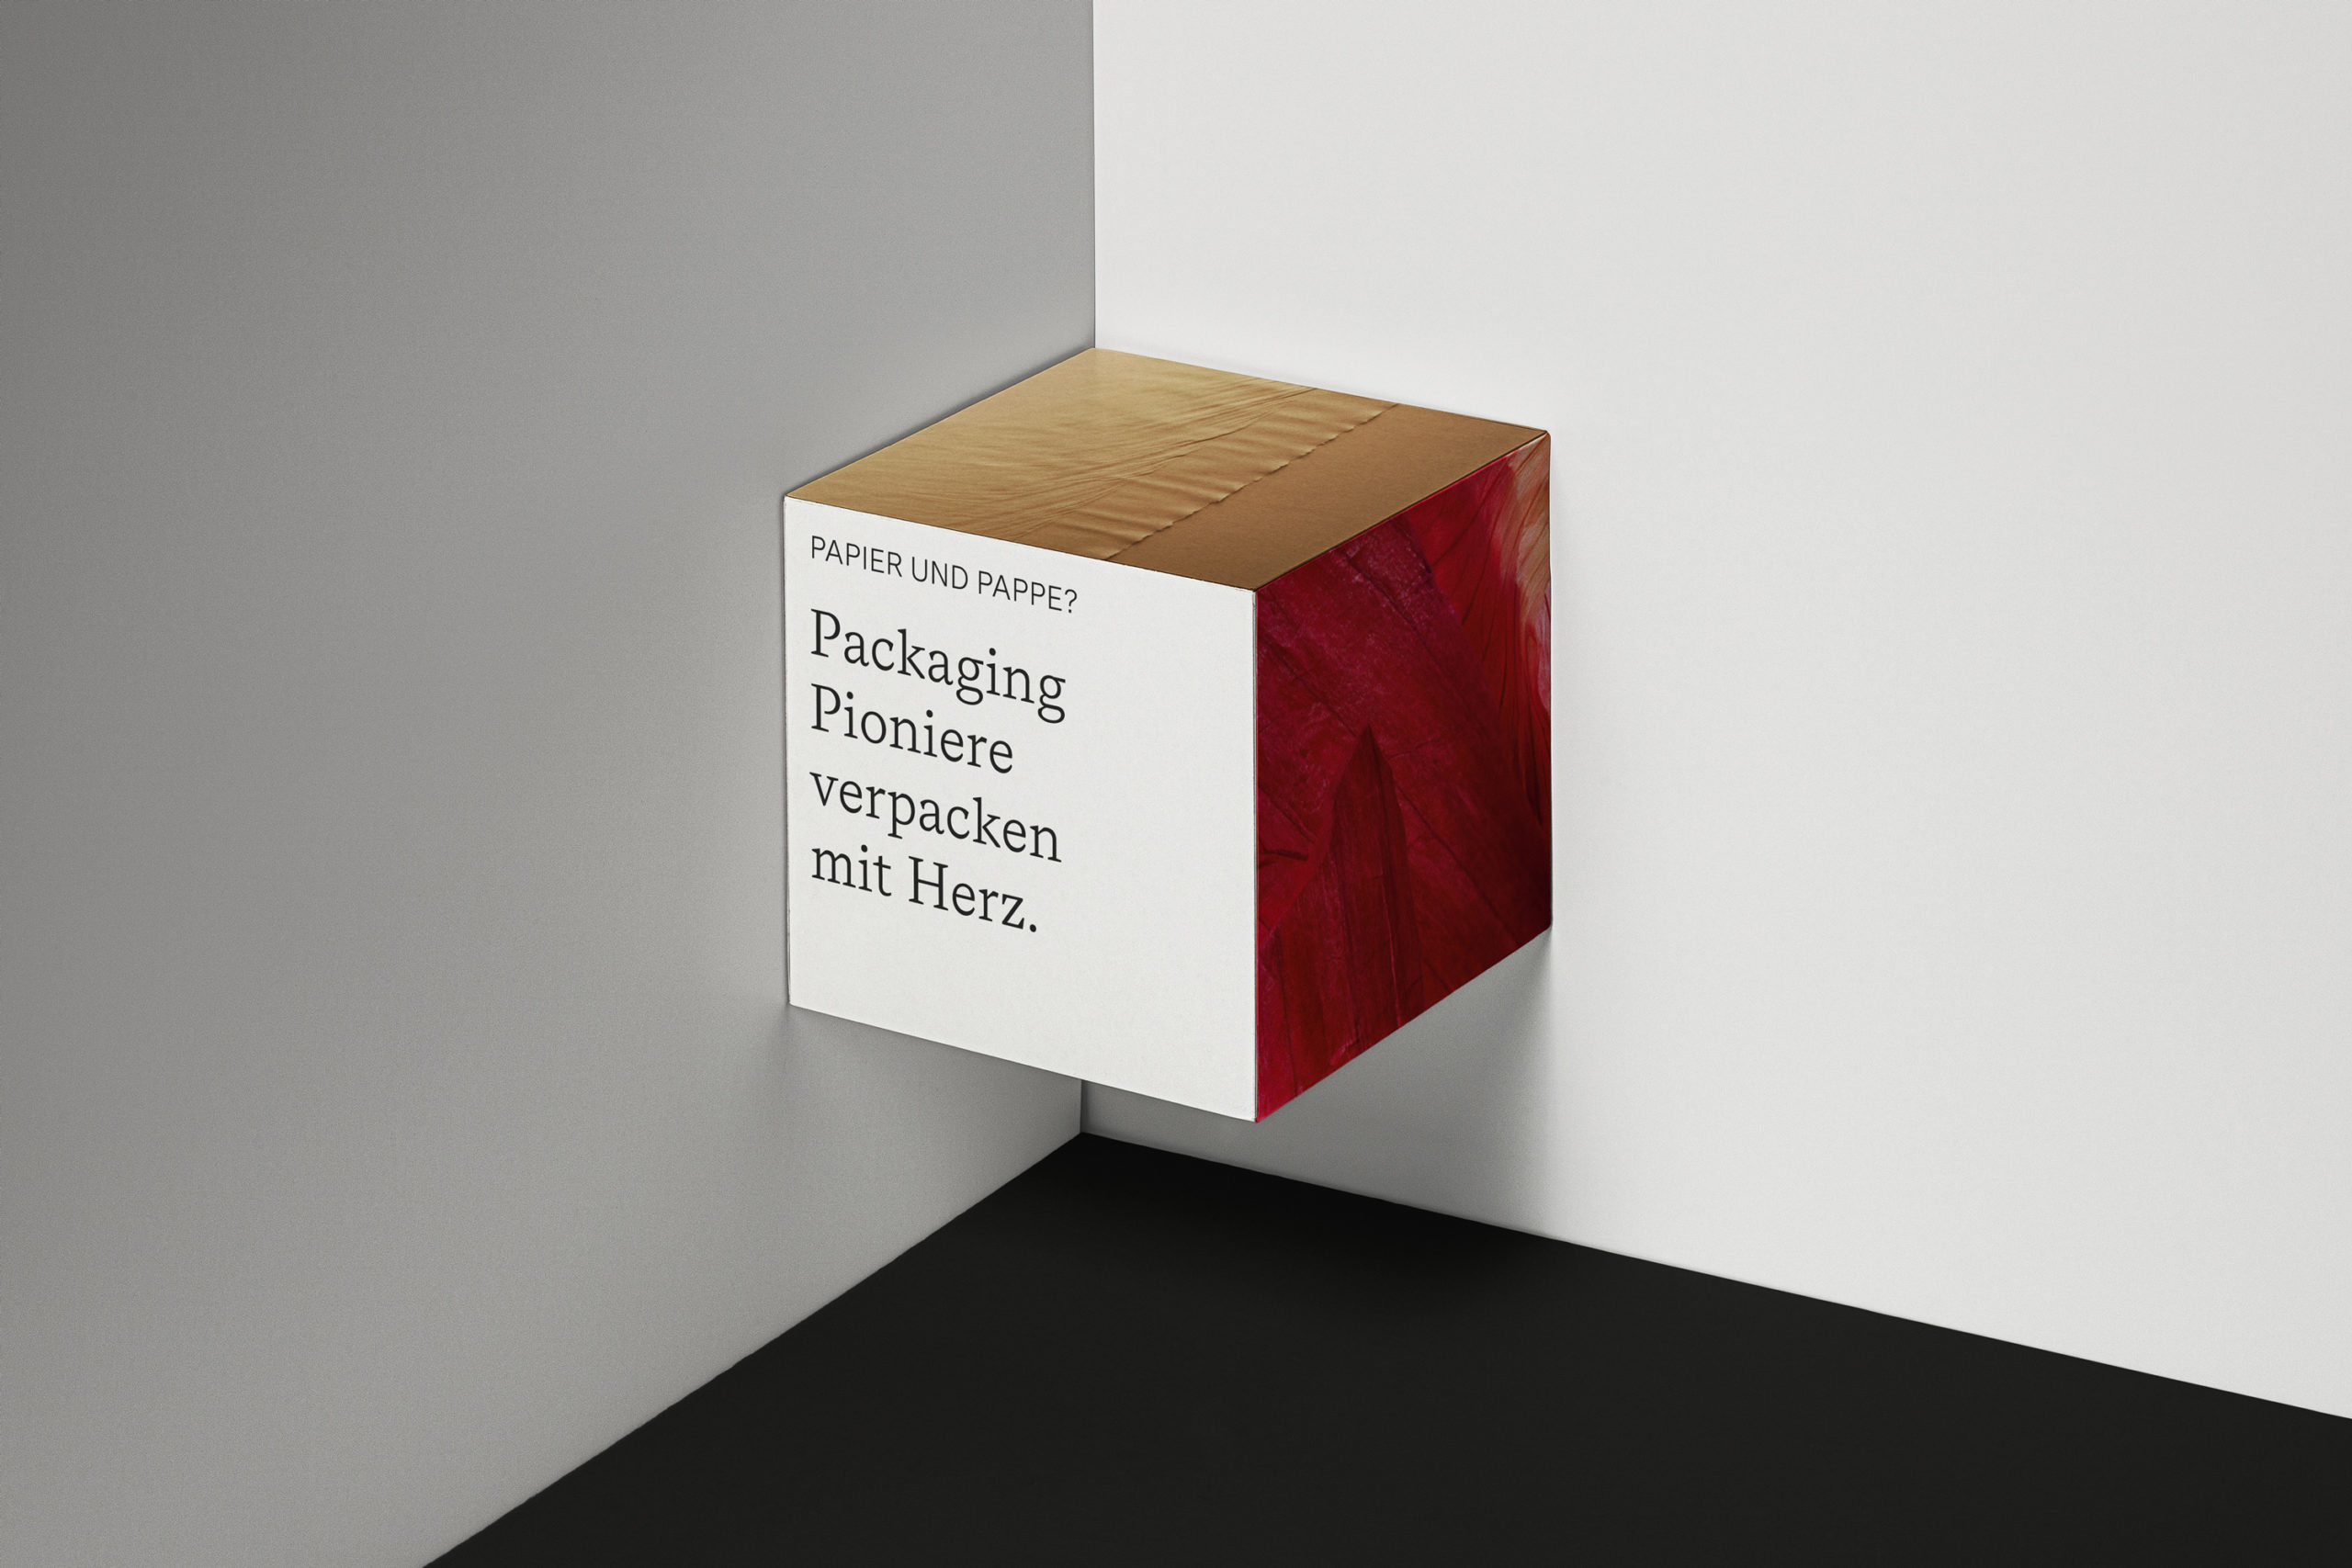 Model-Packaging-Pioniere-Kampagne